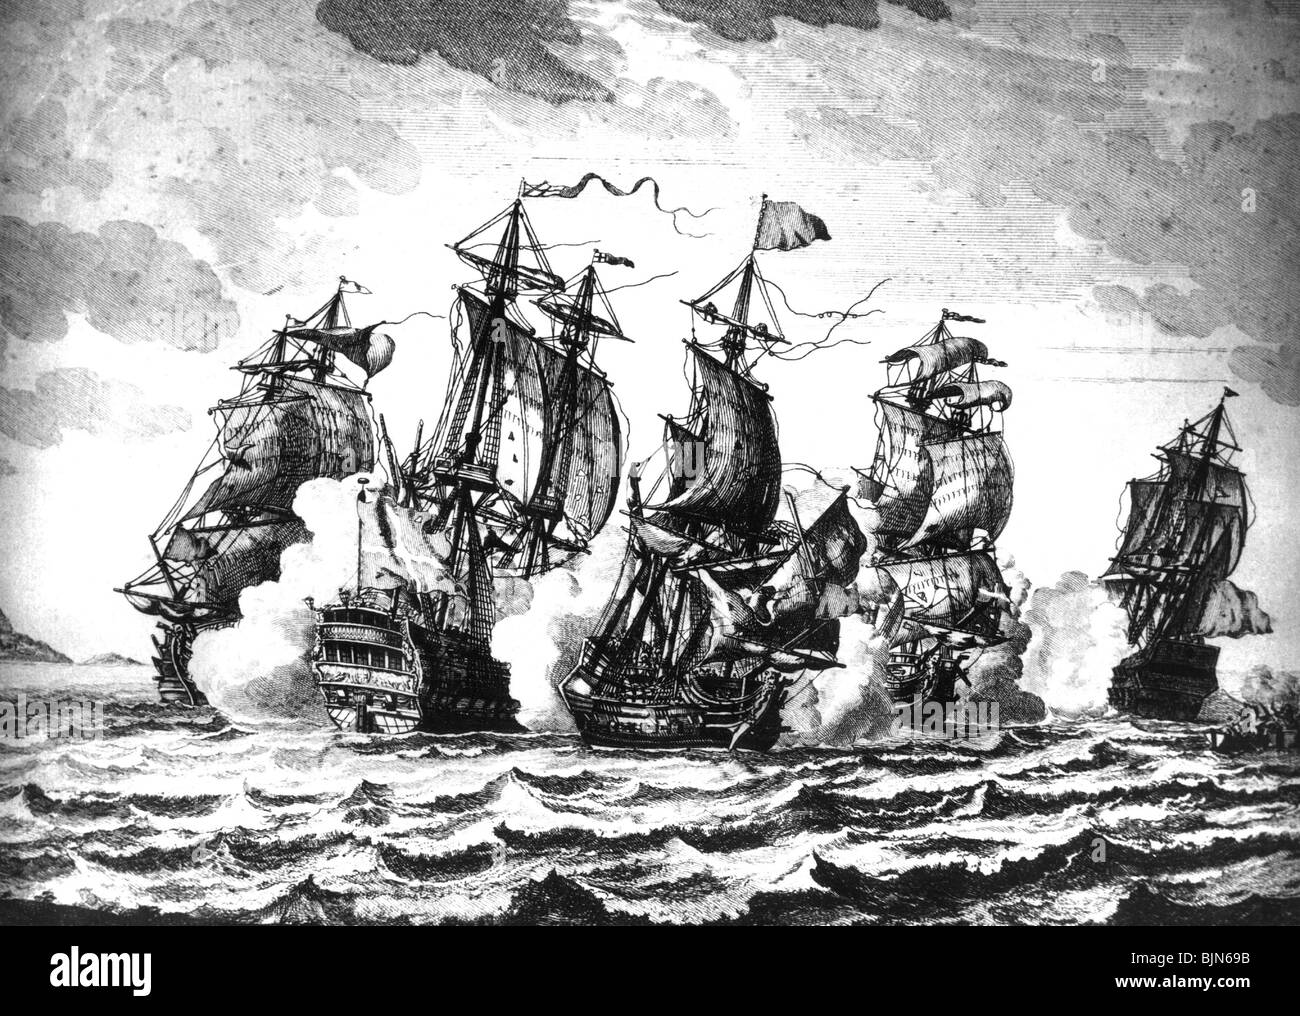 Transporte / transporte, navegación, piratas, batalla naval entre piratas argelinos y buques de guerra de la Orden Soberana Militar de Malta en el Mar Mediterráneo, grabado de cobre, a finales del siglo 17, Foto de stock